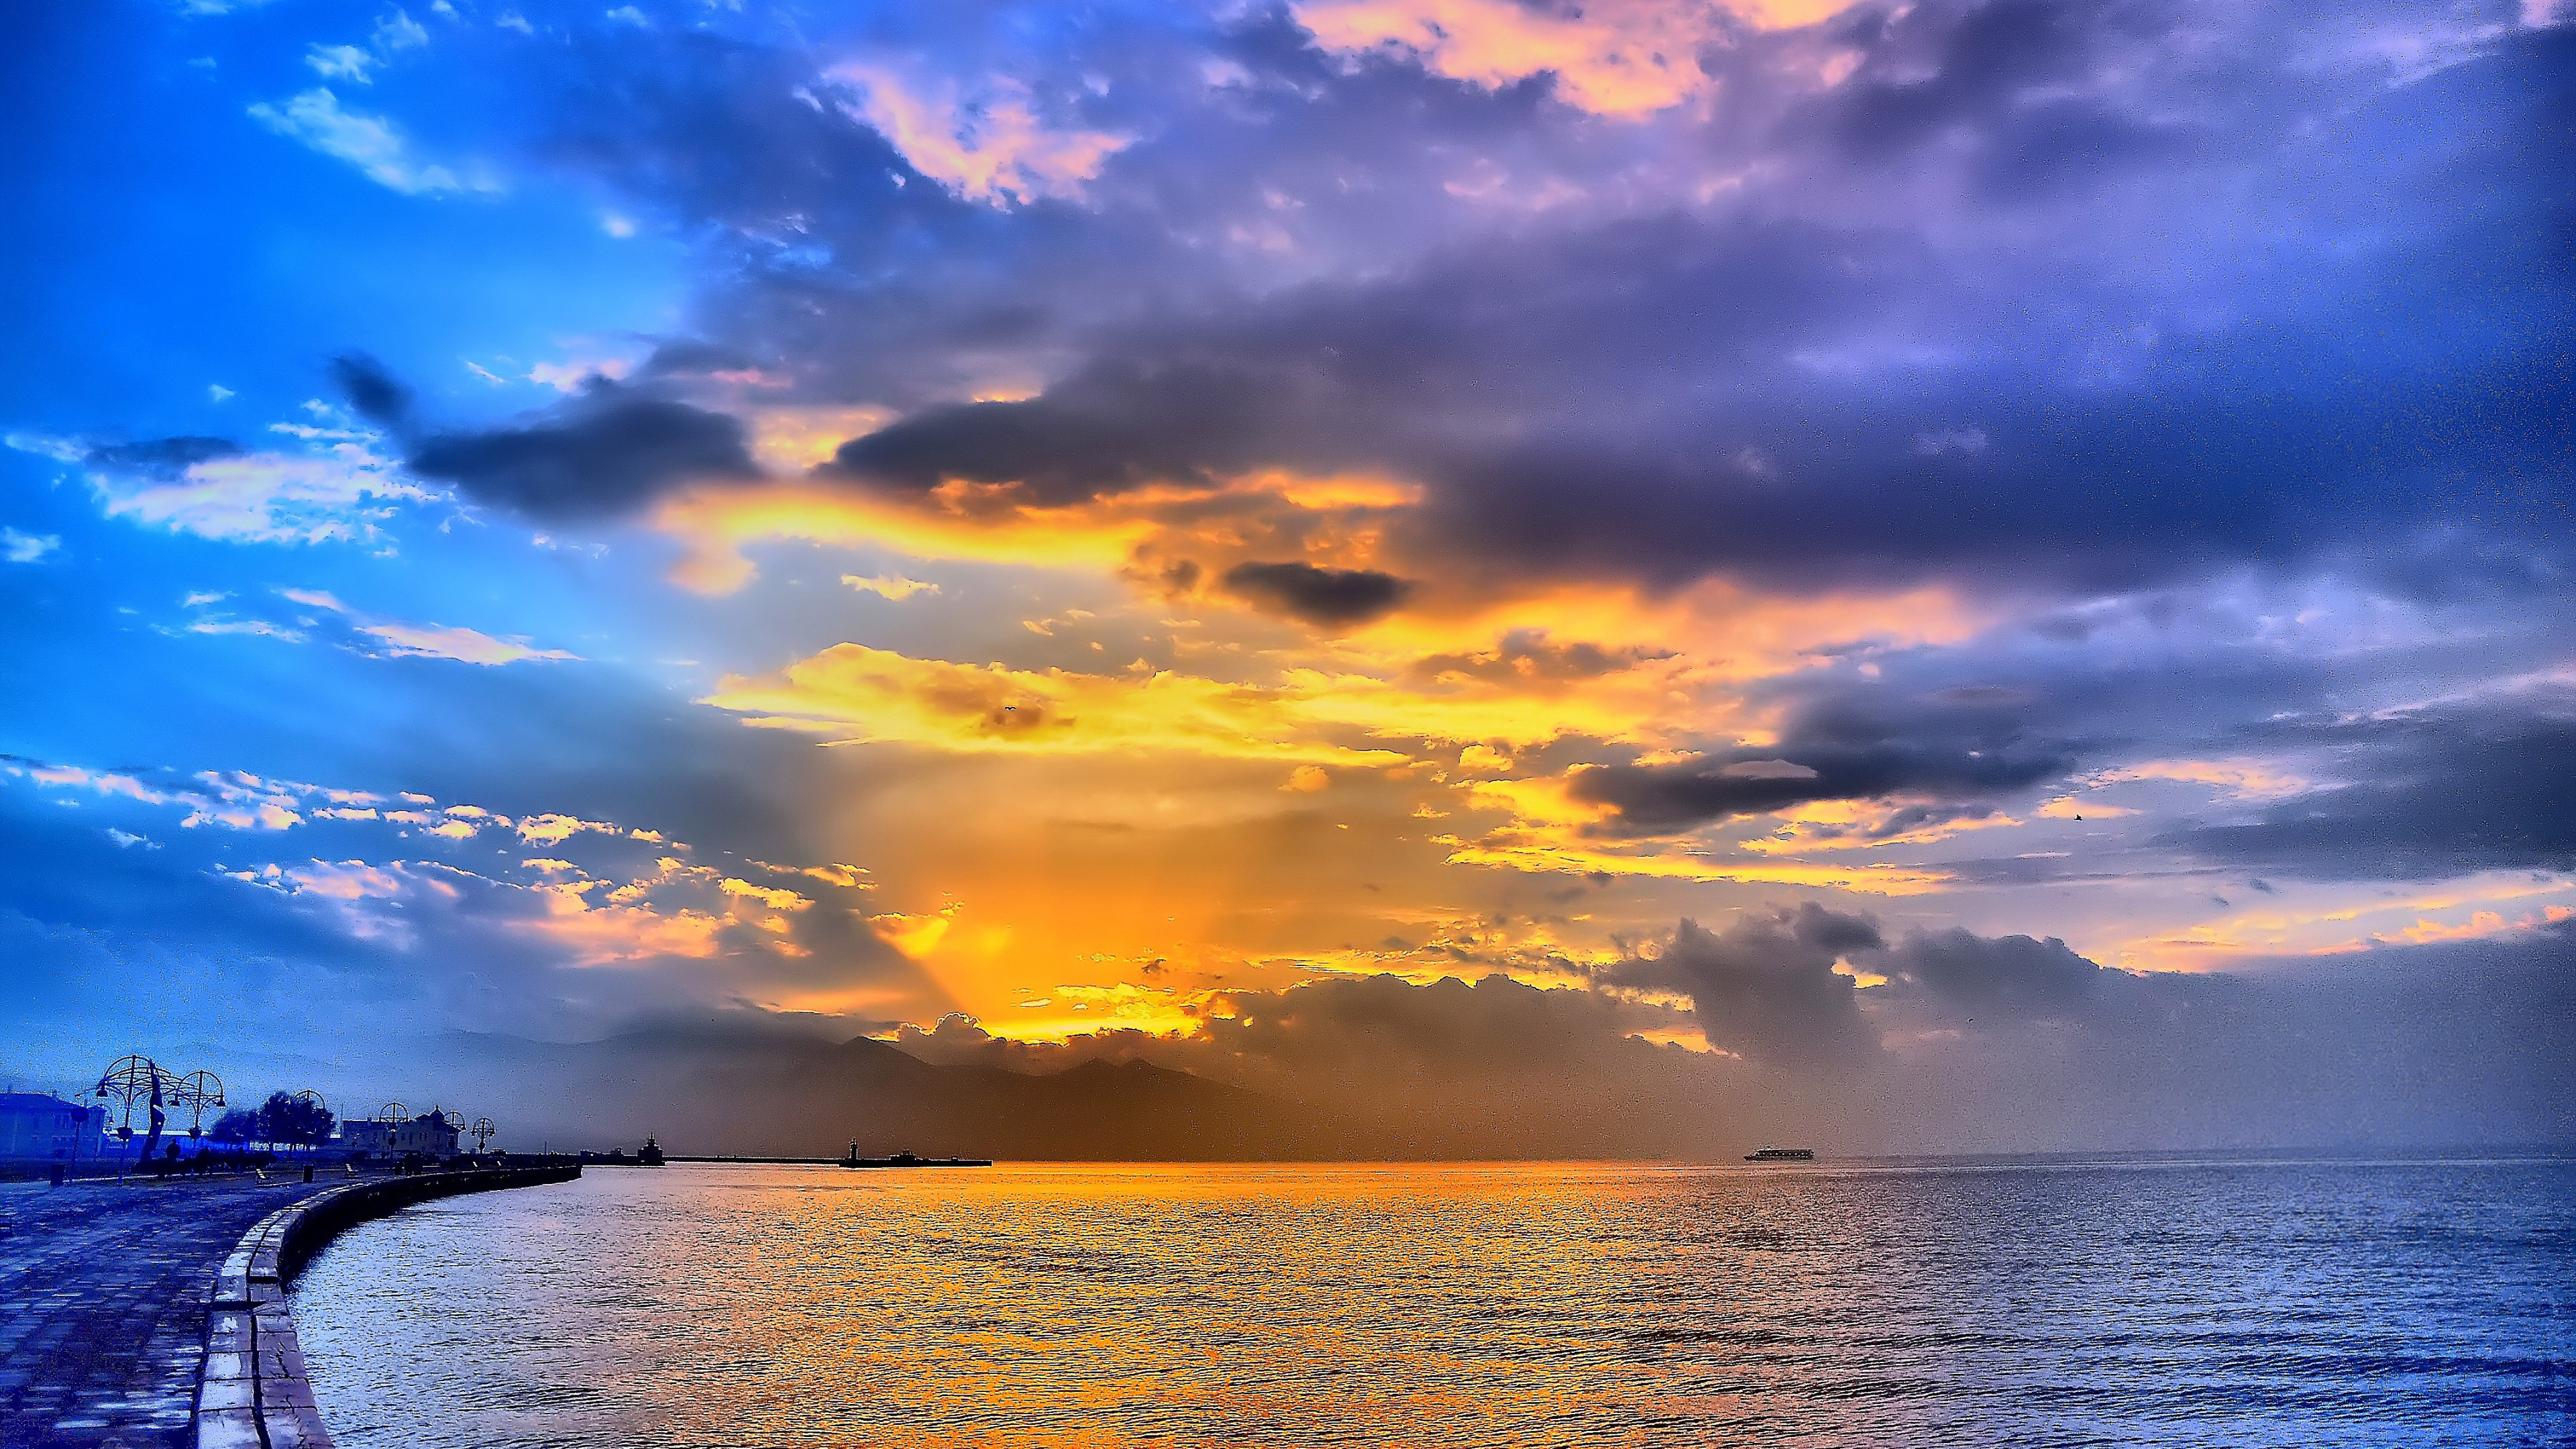 ocean sunset background